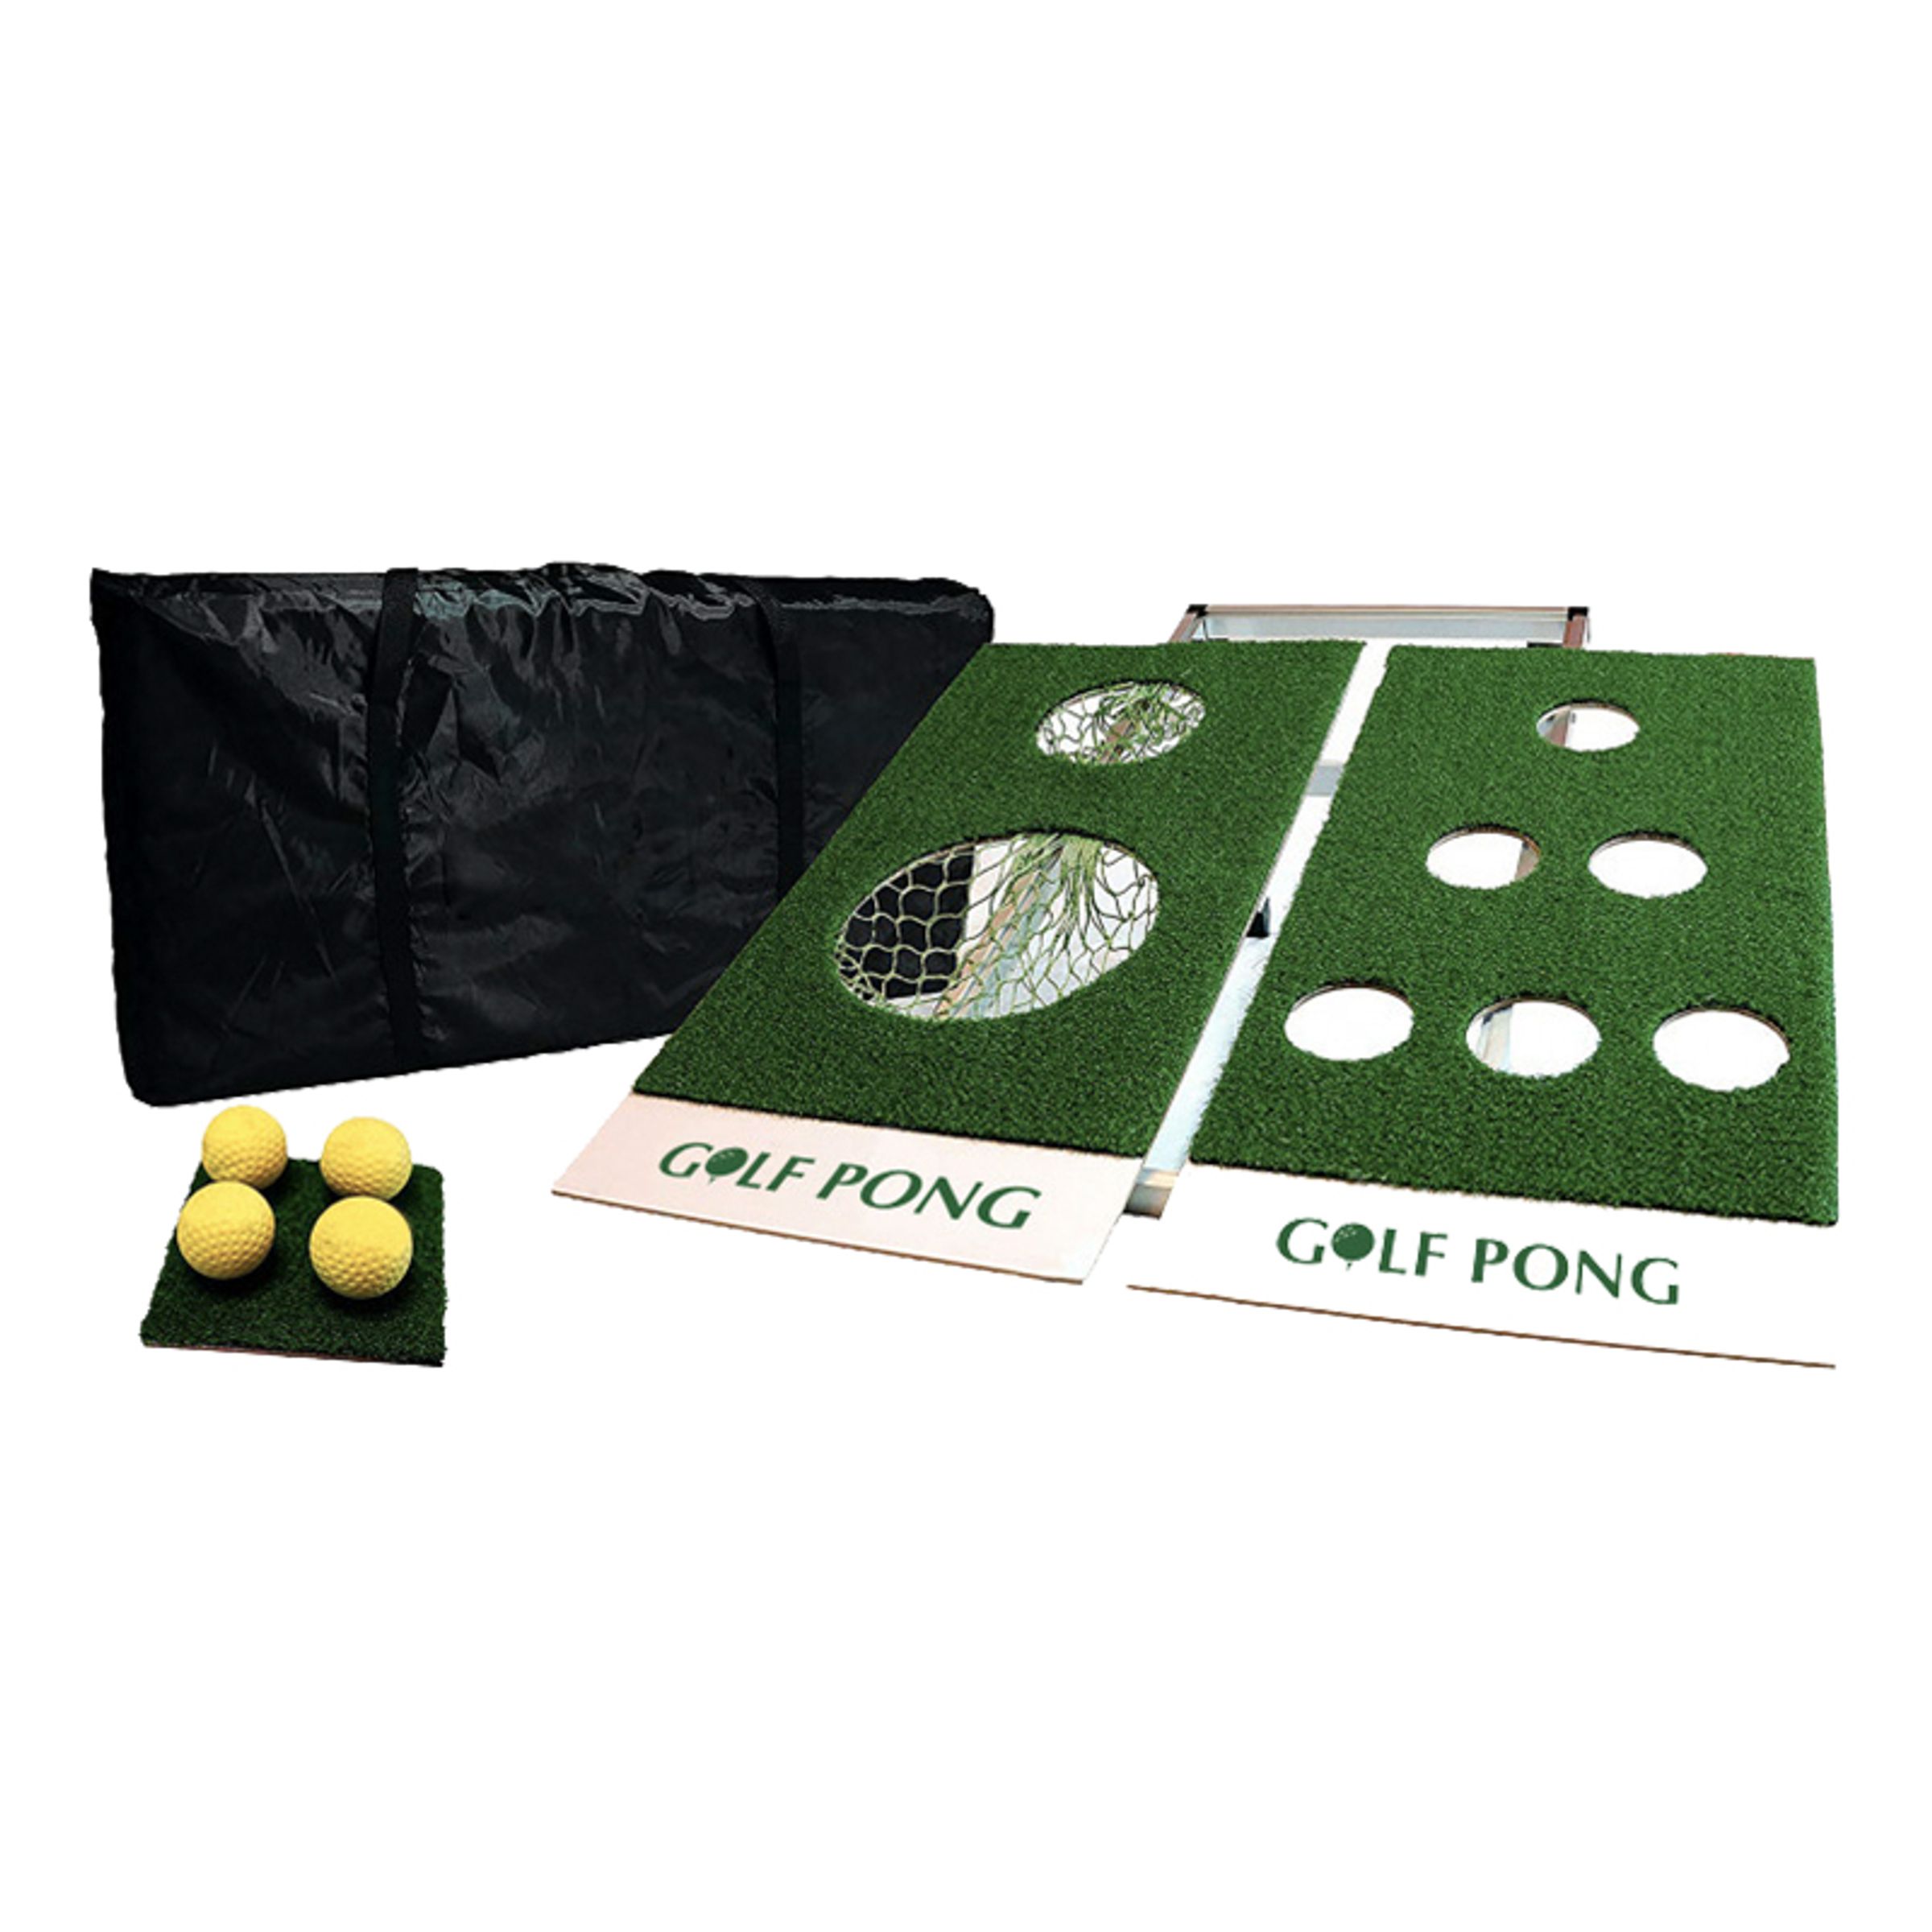 Golf Pong